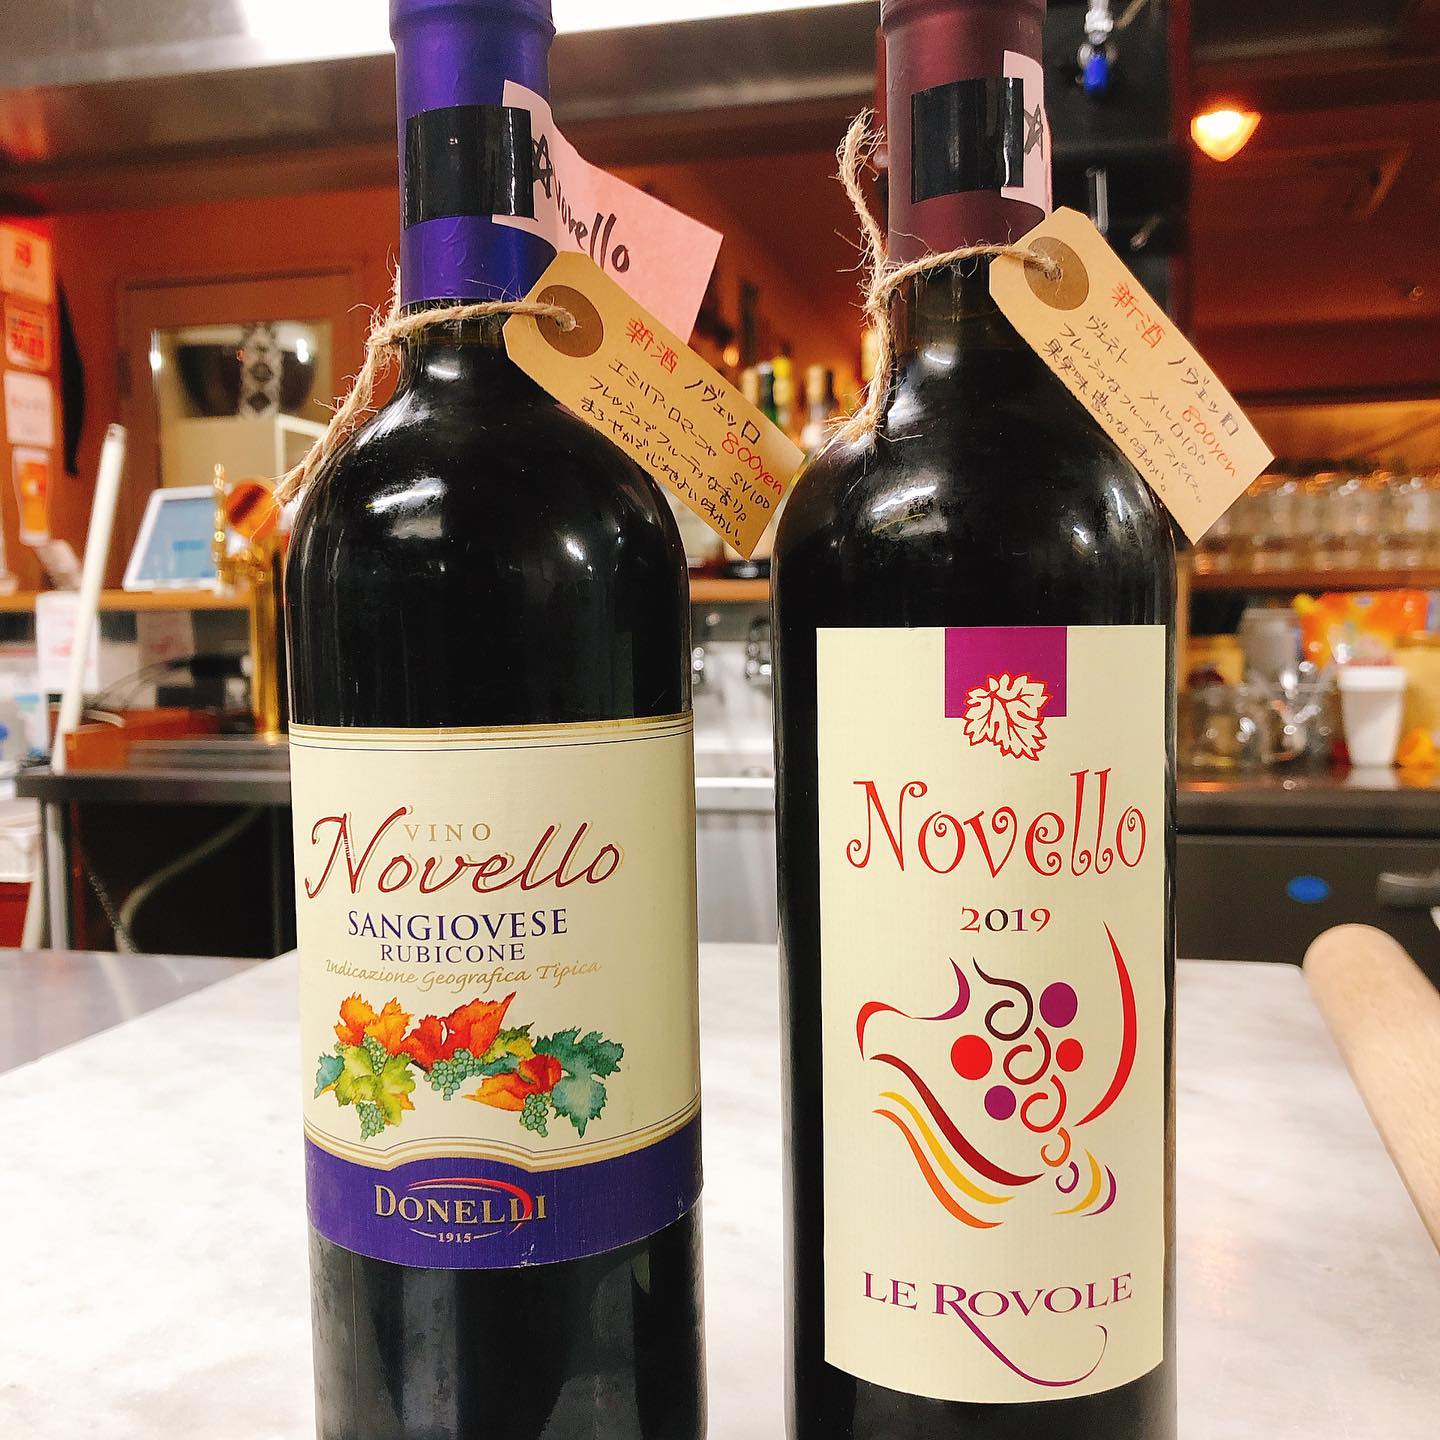 イタリアの新酒ノヴェッロ
明日30日解禁です️ 今年はエミリア・ロマーニャのサンジョヴェーゼとヴェネトのメルロー️
飲み比べも出来ます。
フレッシュな新酒ワインと秋らしいイタリア料理食べにきませんか？